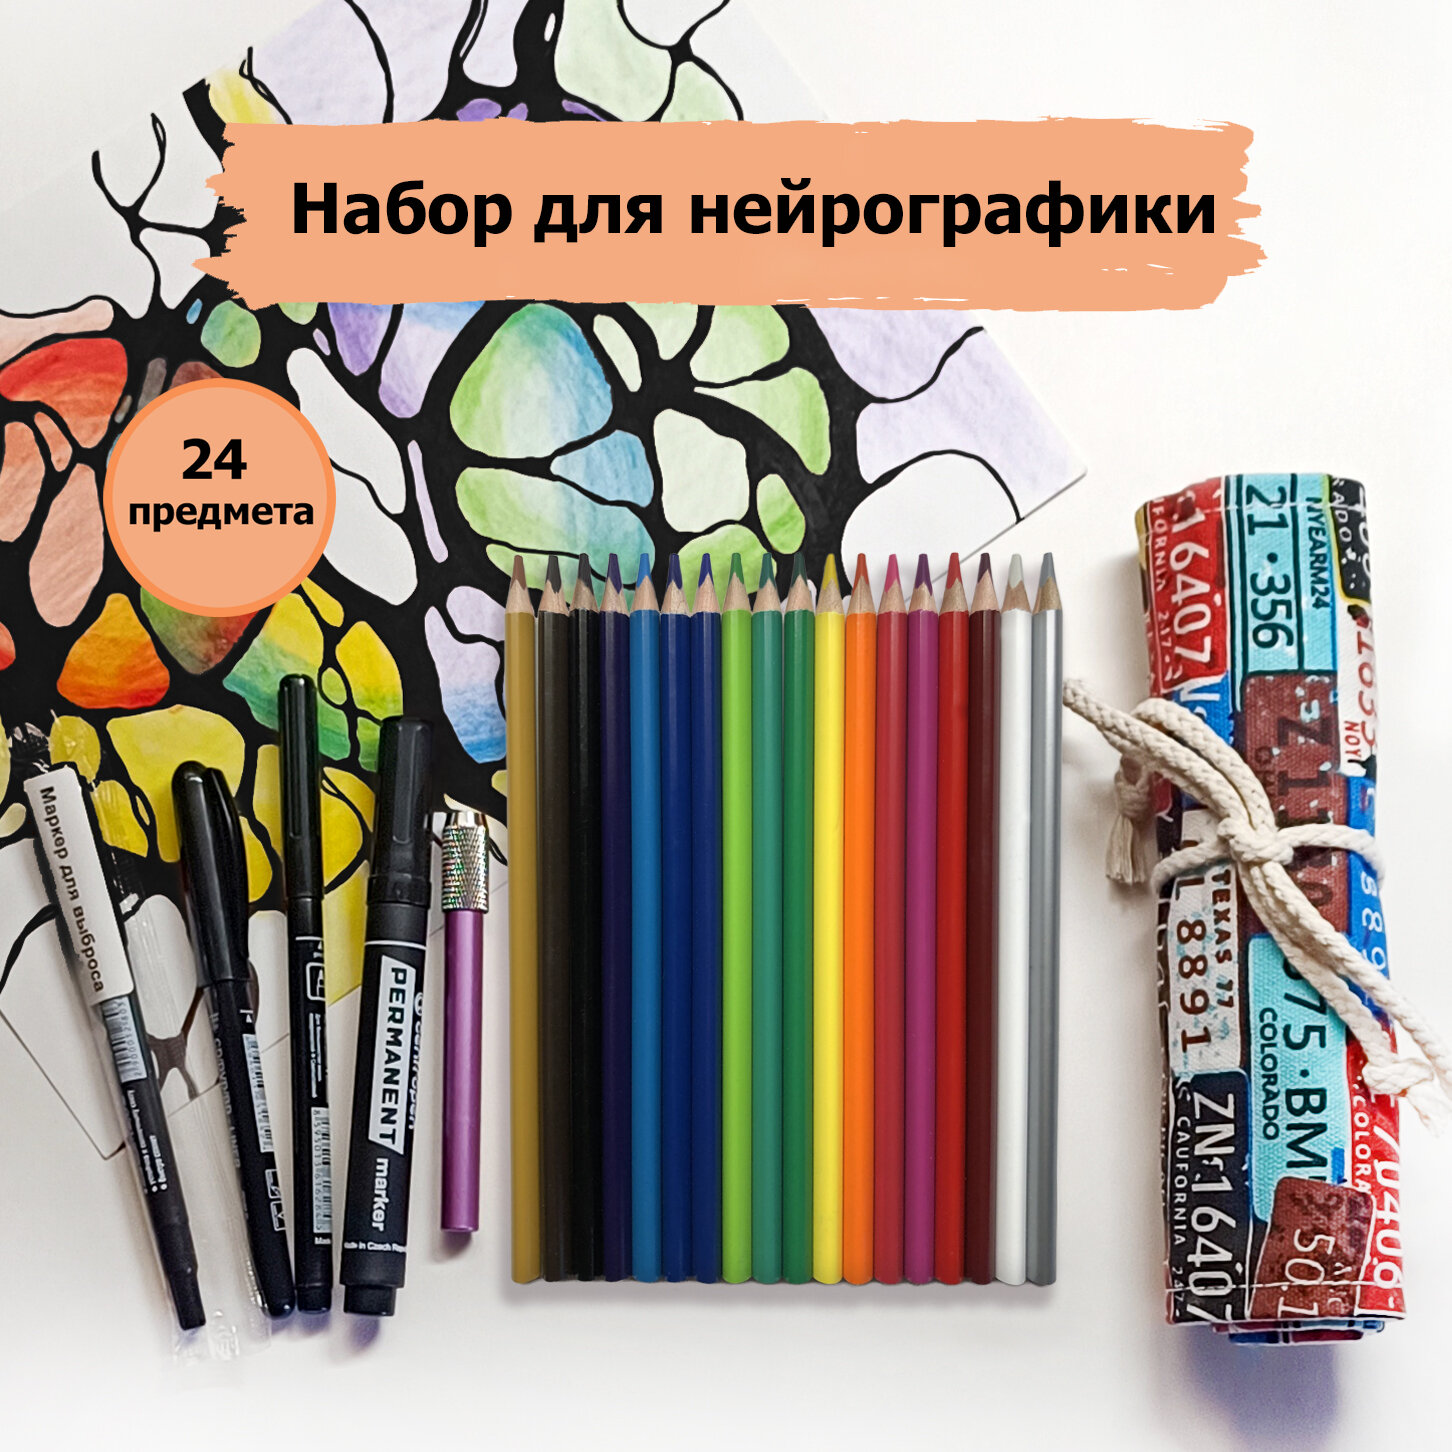 Набор для нейрографики и творчества с 4 черными перманентными маркерами, цветными карандашами, держателем для сточенных карандашей и пеналом скруткой.